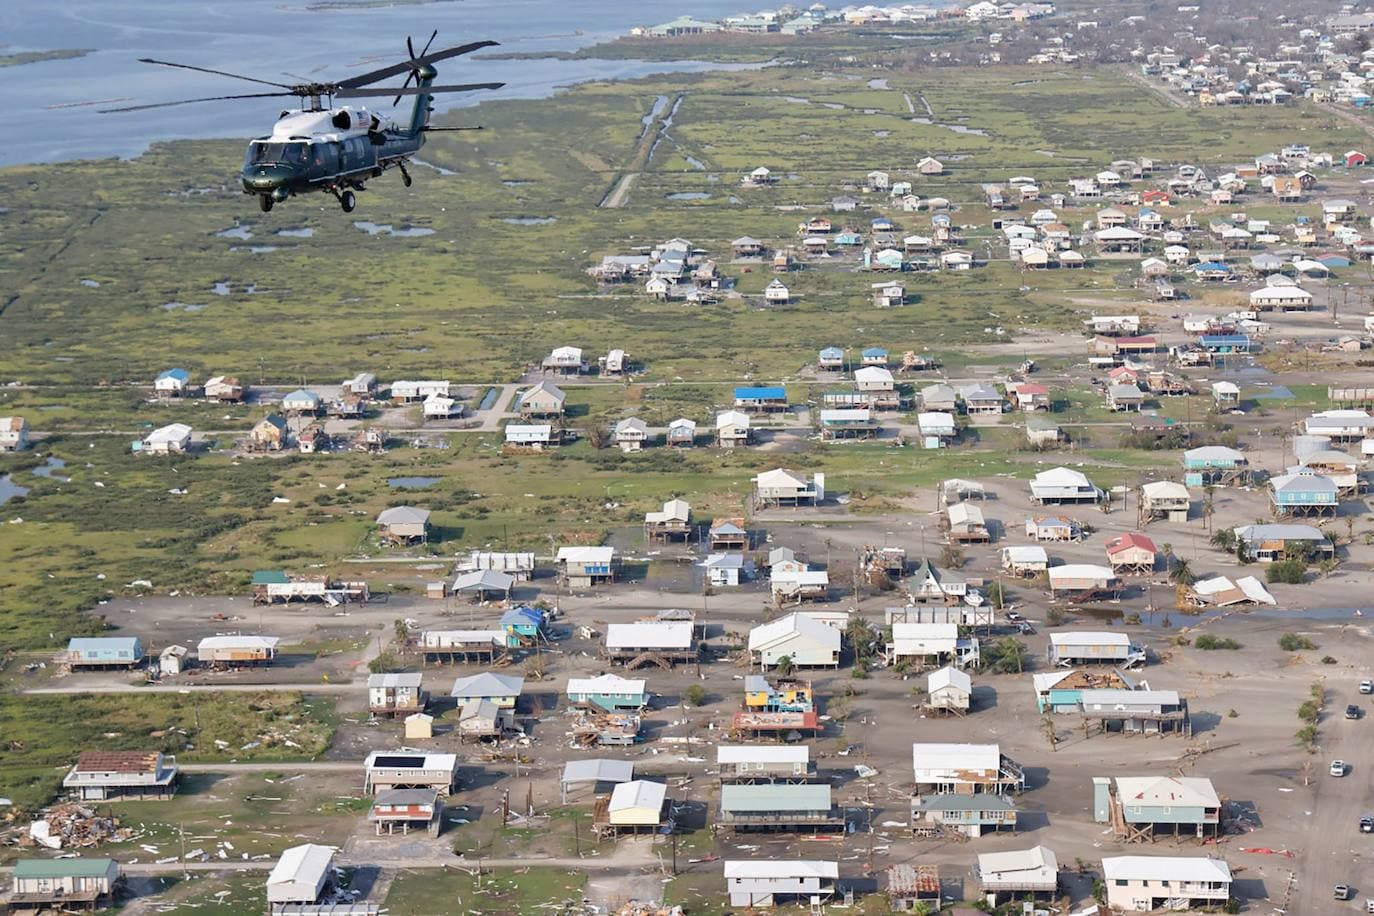 El presidente de los Estados Unidos, Joe Biden, a bordo del helicóptero Marine One, inspecciona los daños del huracán Ida en una gira aérea por las comunidades en Laffite, Grand Isle, Port Fourchon y Lafourche Parish, Louisiana, el 3 de septiembre de 2021. Biden tiene como priorida en su agenda luchar contra el cambio climático.